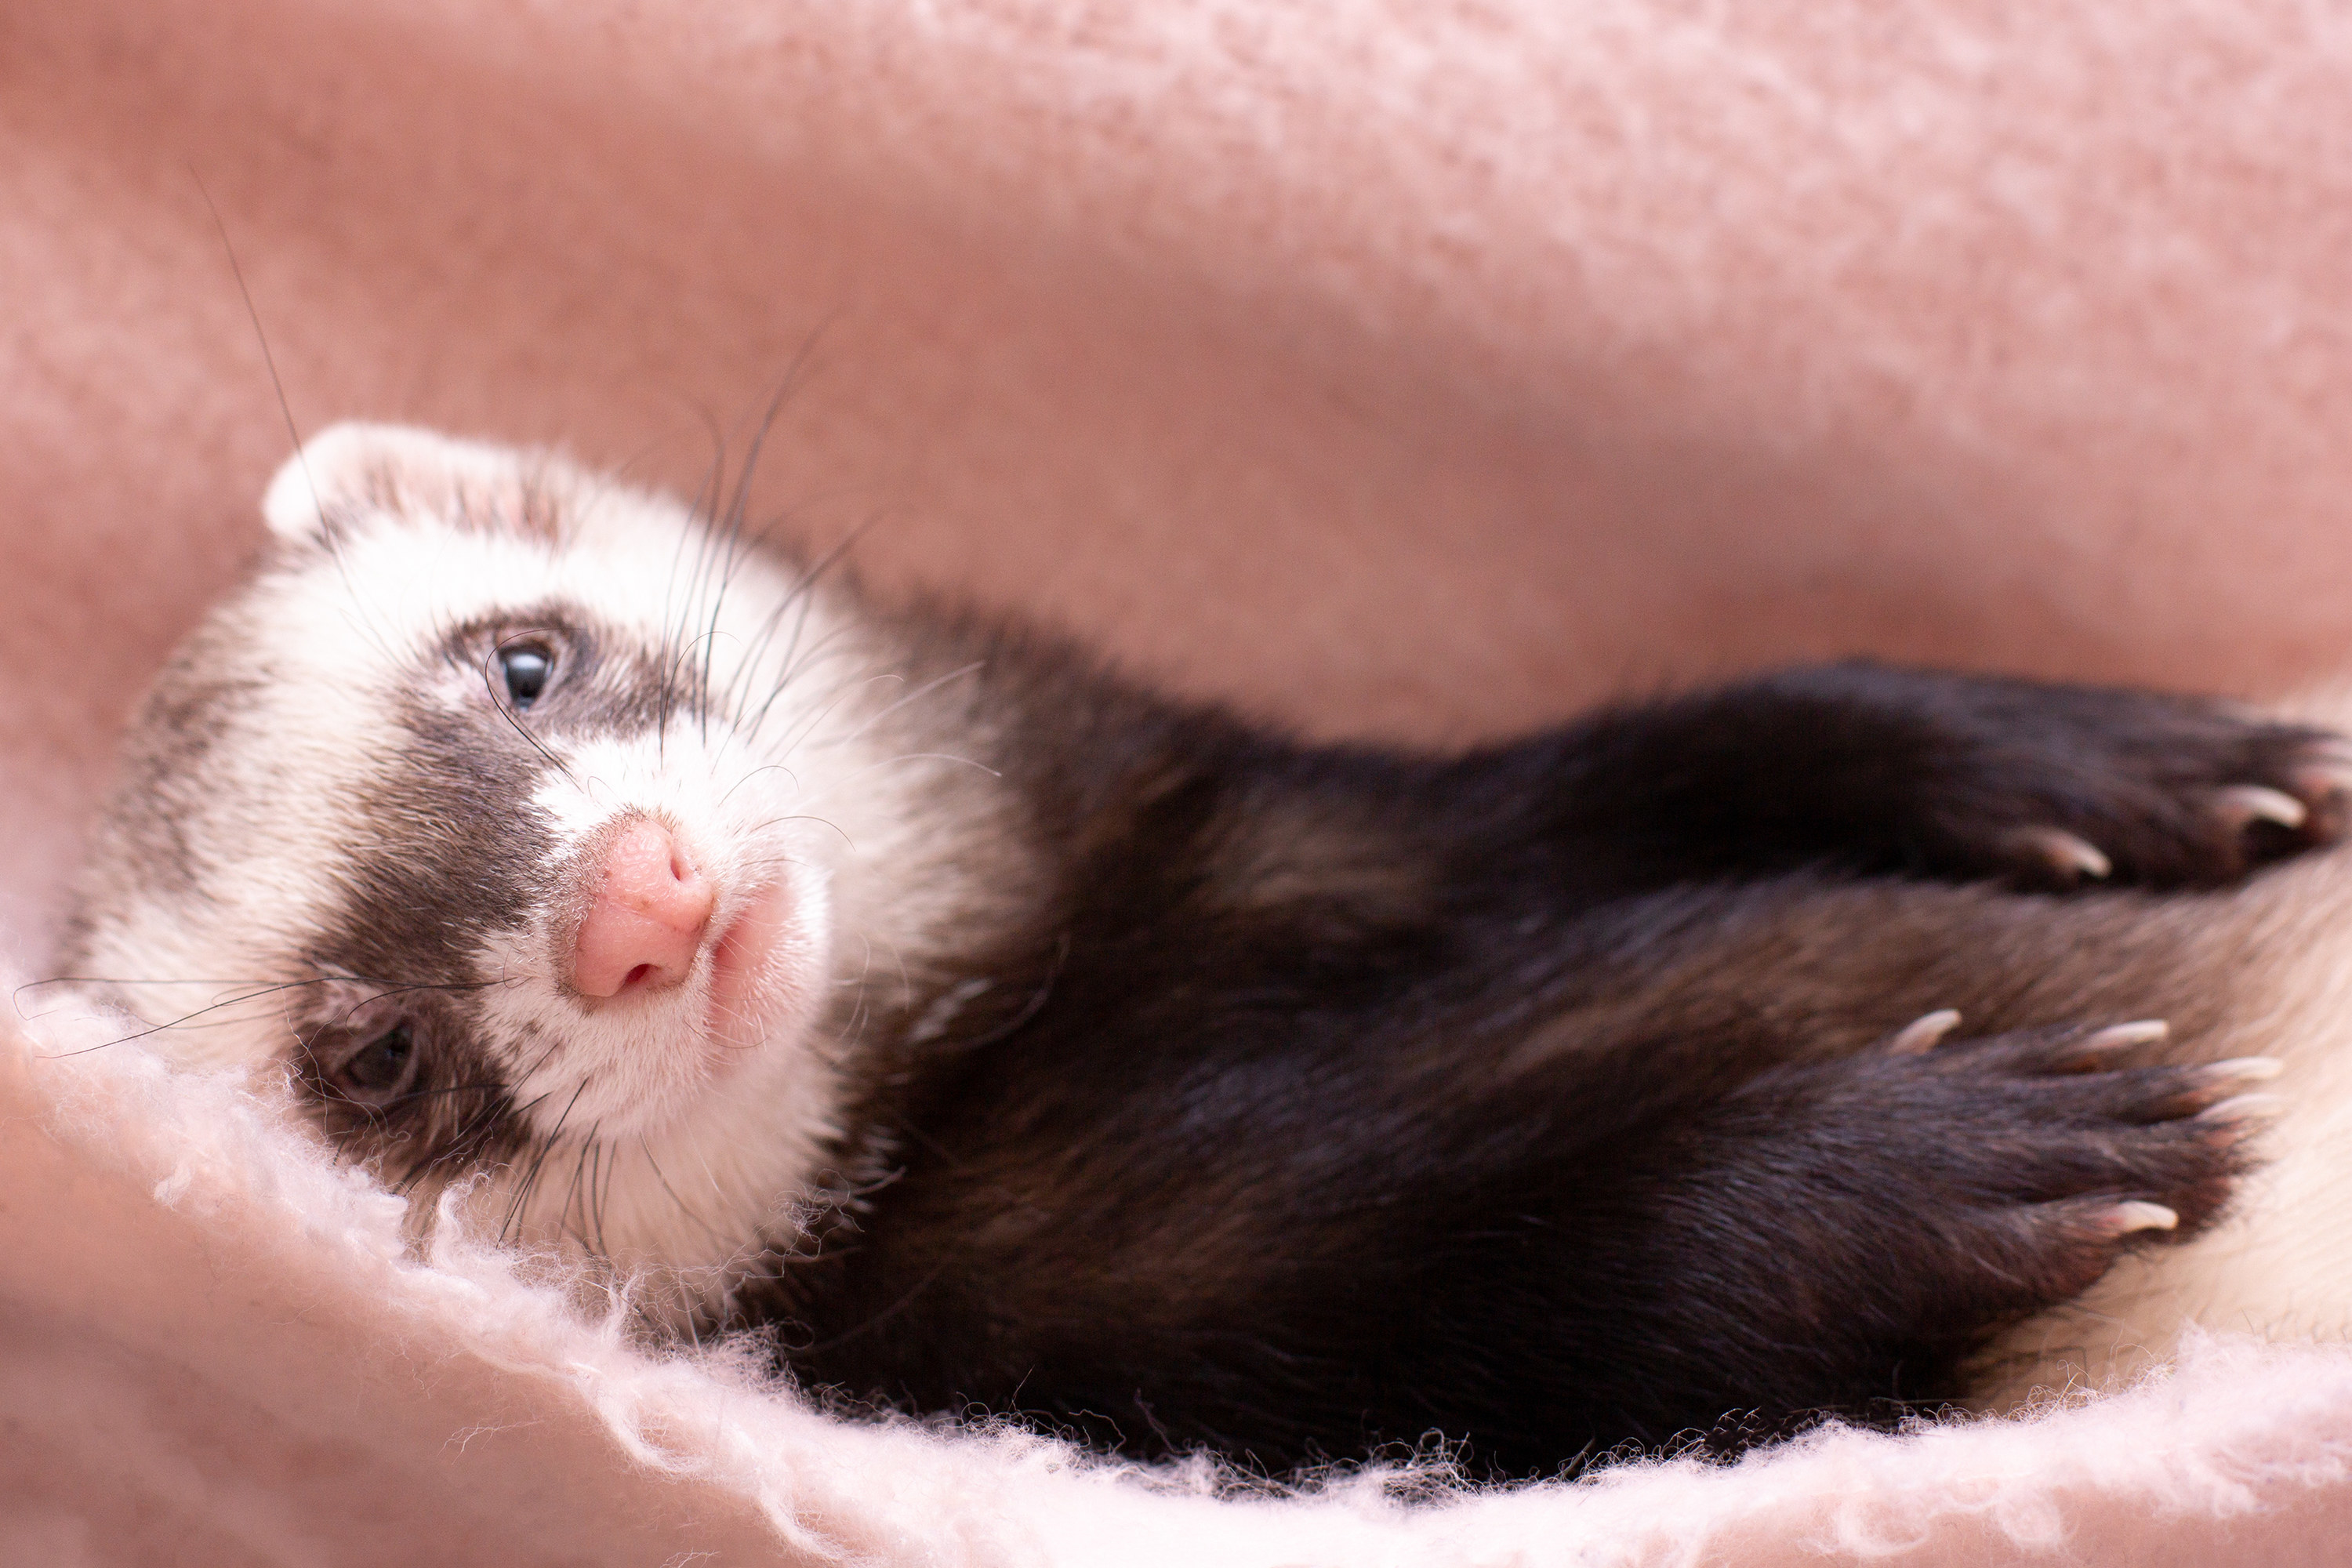 a ferret lying in a blanket